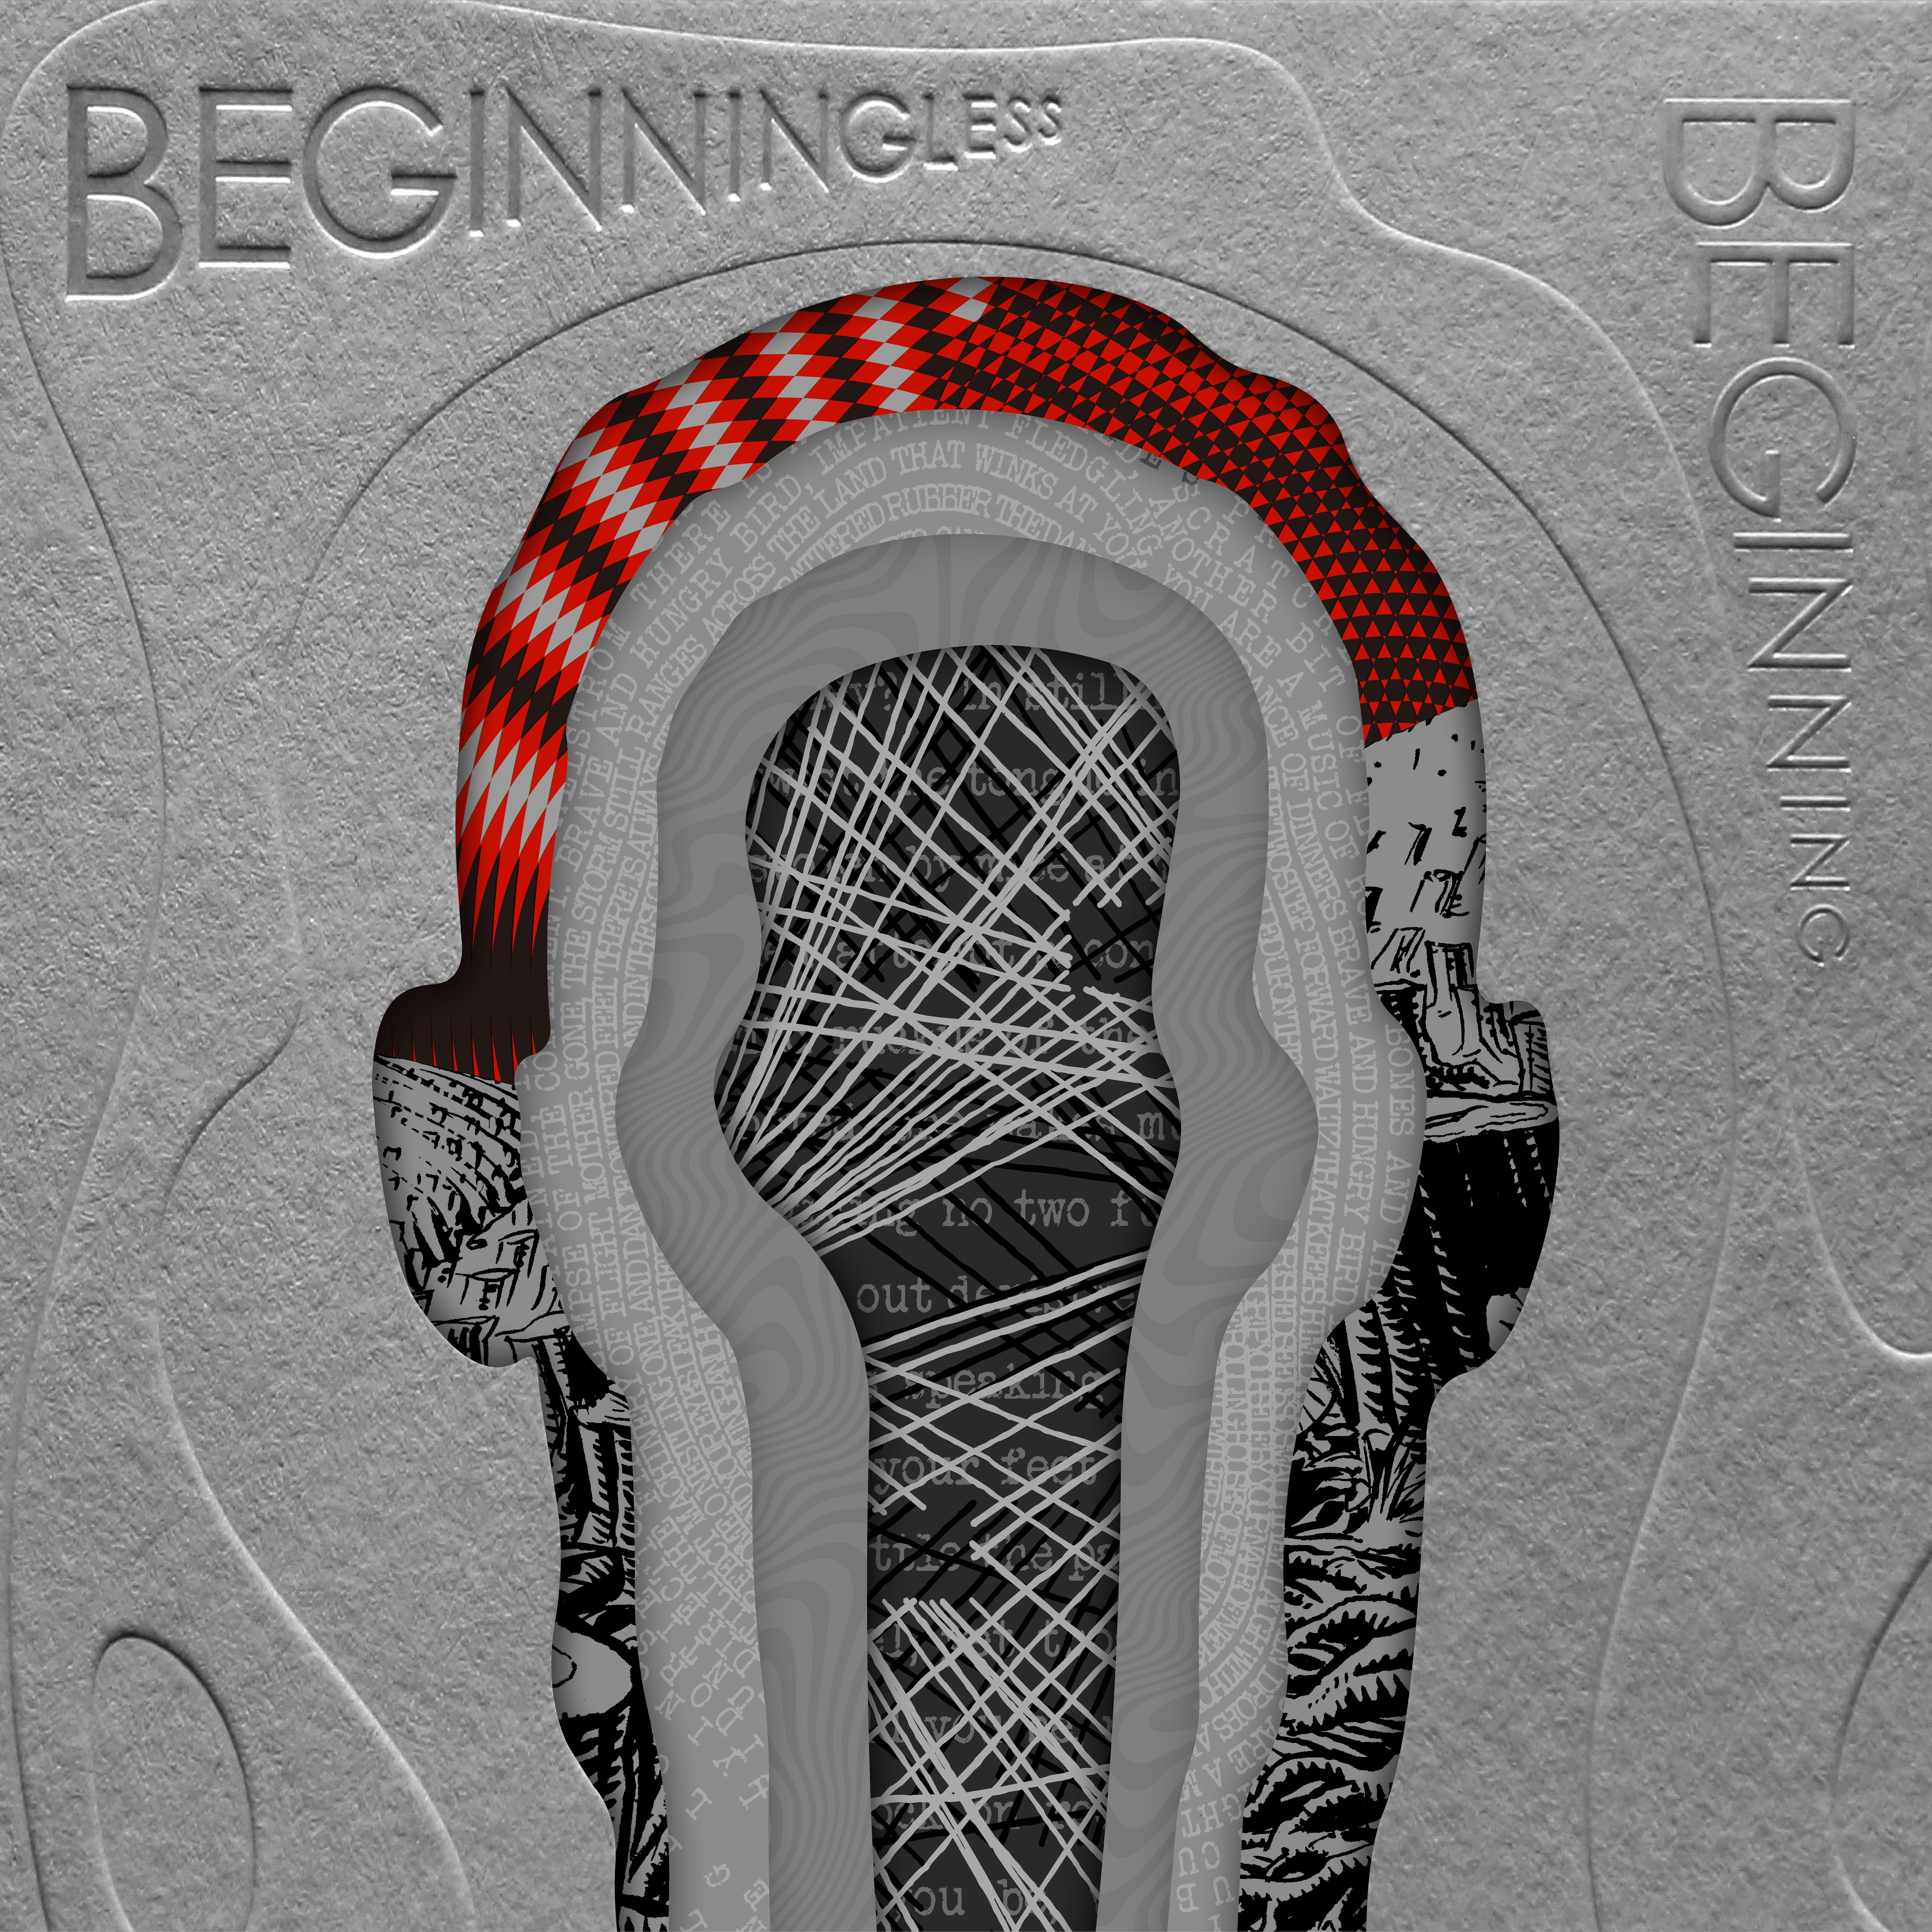 淡蘭古道三部曲原聲帶專輯《Beginningless Beginning》榮獲2023年第65屆葛萊美最佳唱片包裝設計獎(由蕭青陽工作室提供)